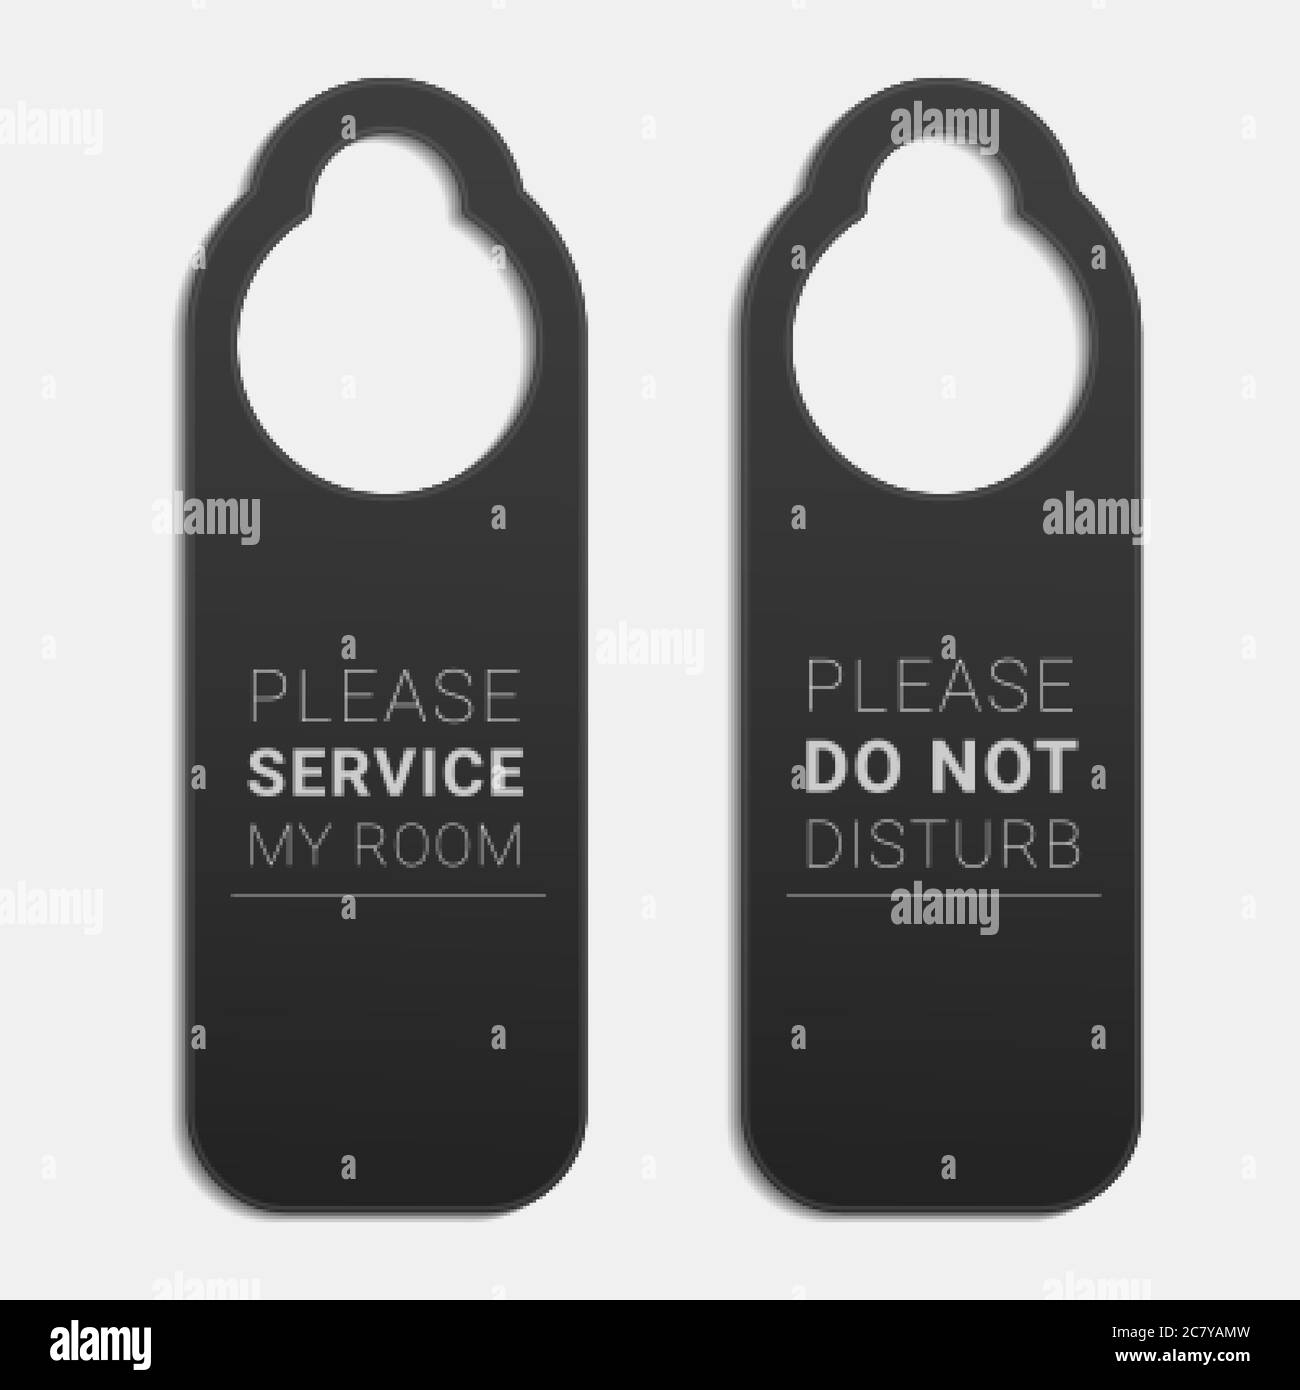 Do not disturb and Please service my room door hangers. Stock Vector